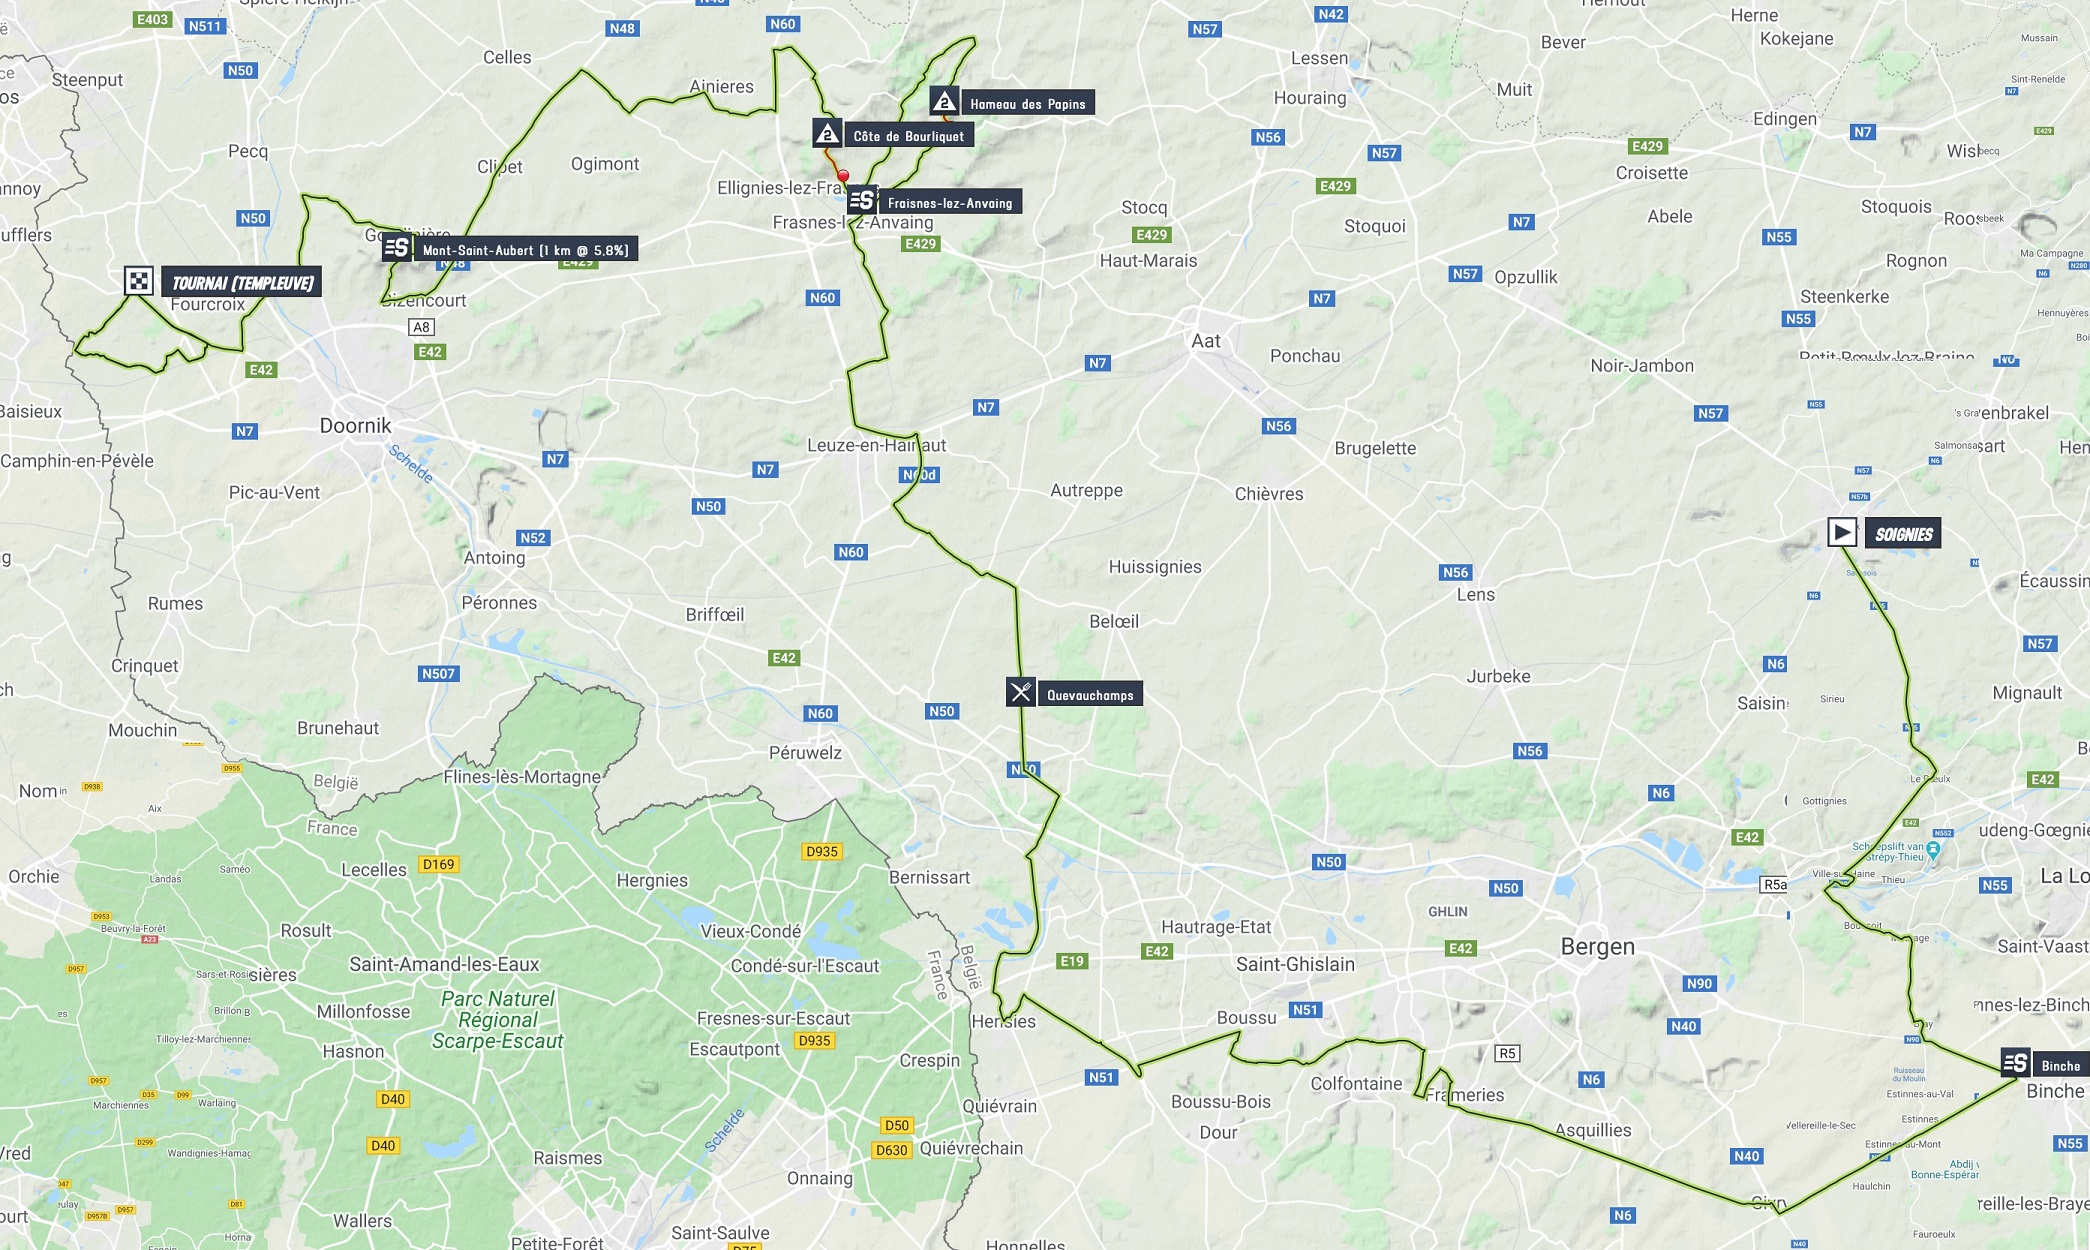 Streckenverlauf VOO-Tour de Wallonie 2020 - Etappe 1